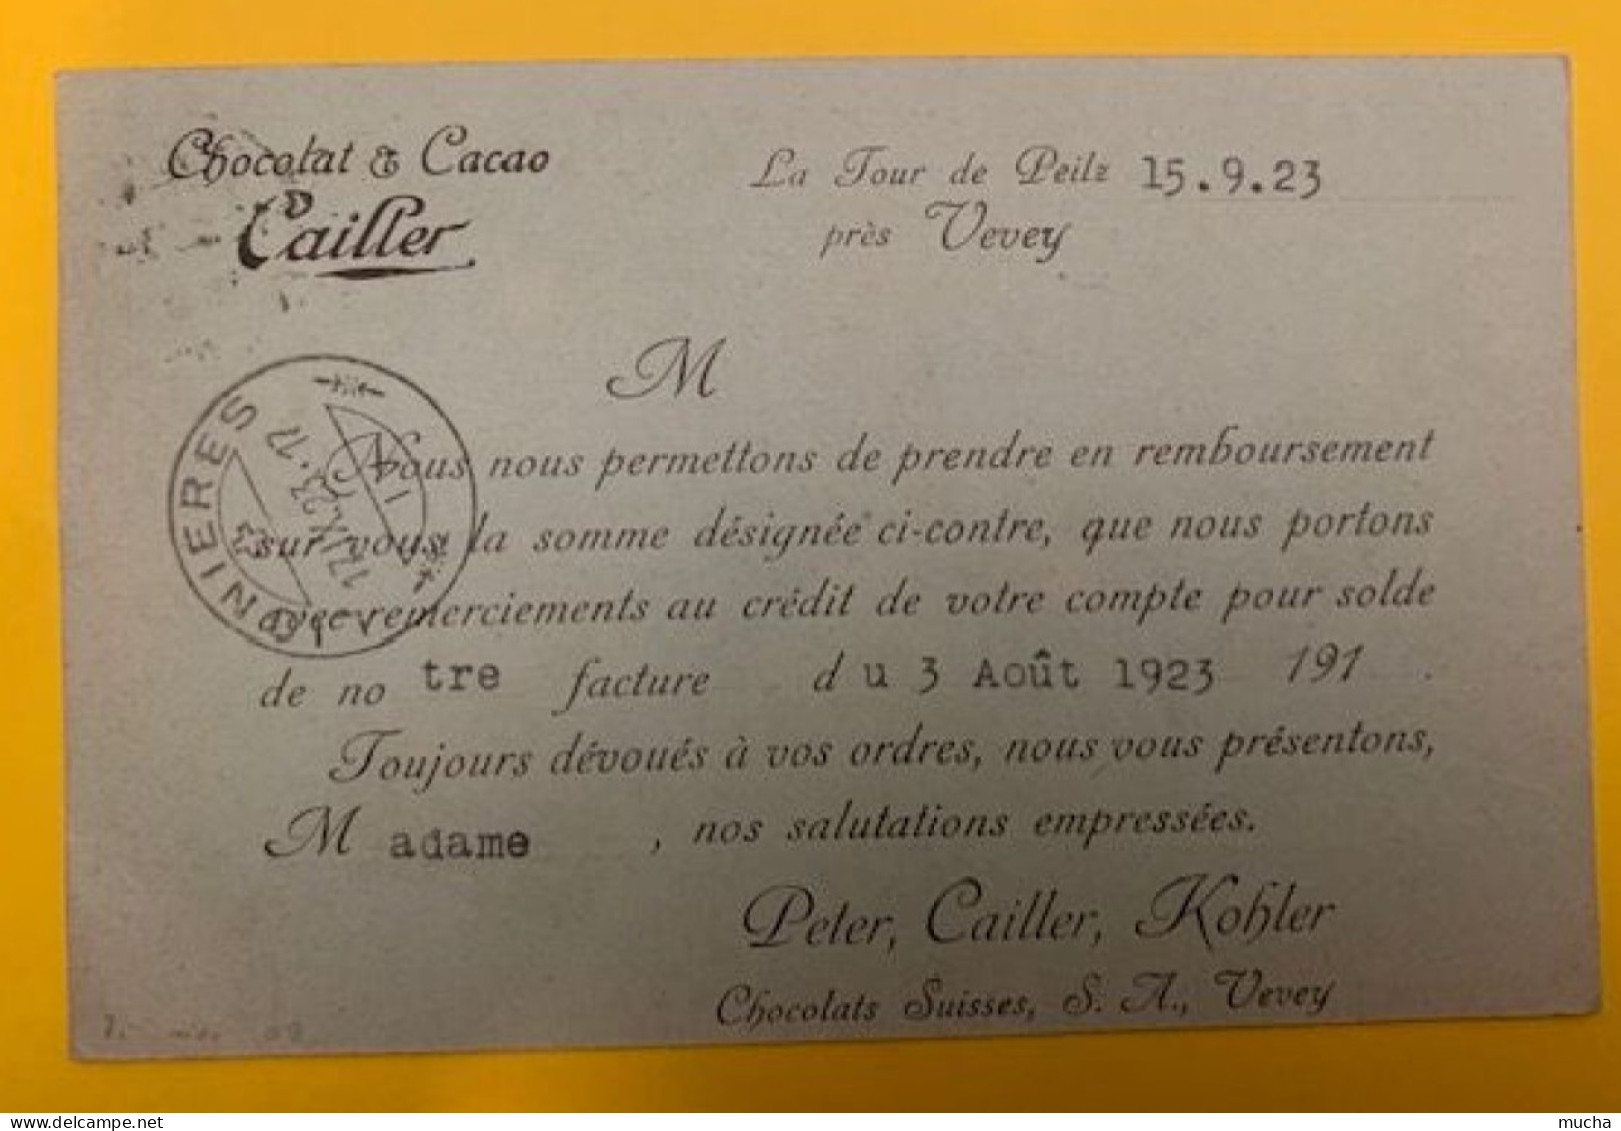 20404 - Carte Remboursement Chocolats Peter, Cailler, Kohler Vevey  La Tour De Peilz 14.09.1923 - Covers & Documents